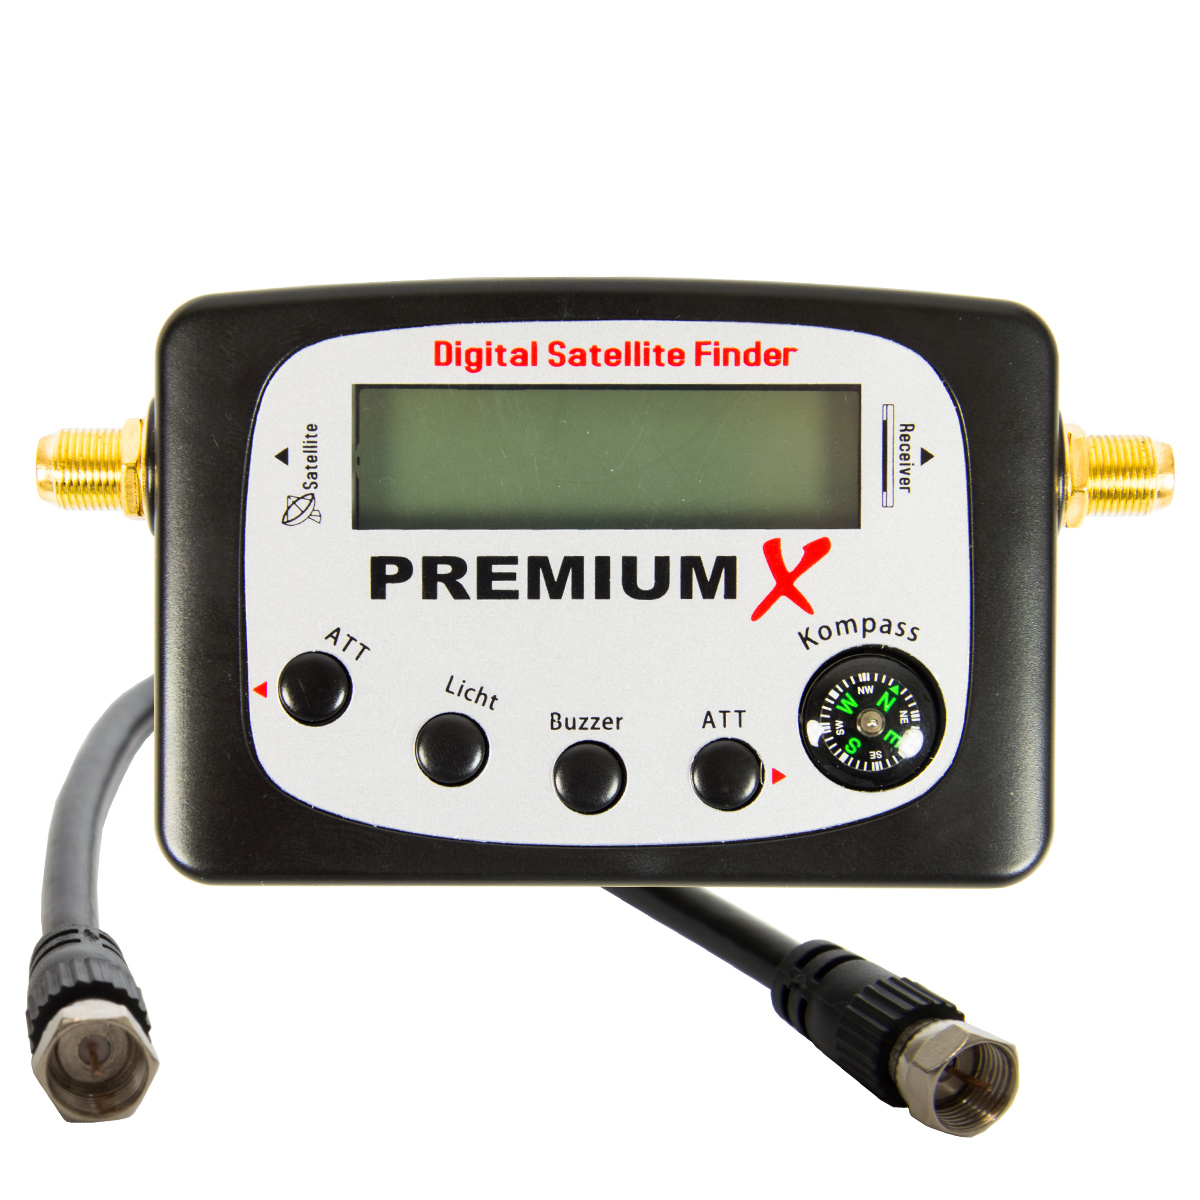 Satellitenfinder für Sat Anlage Kompass Messgerät PREMIUMX Satellitenfinder Sat-TV-Signalfinder Satfinder